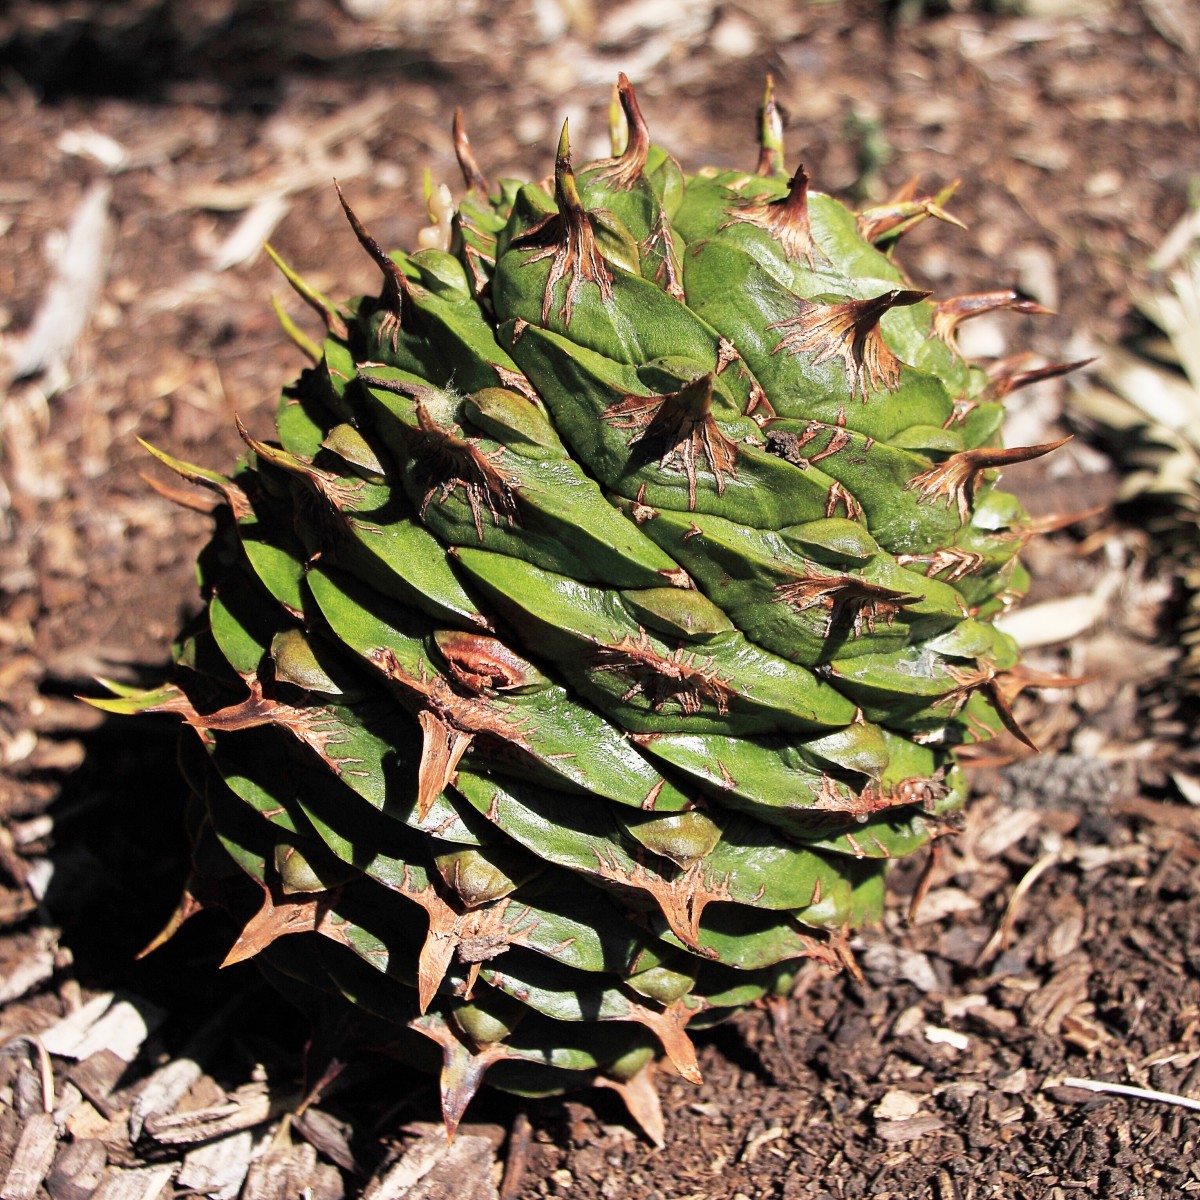 A bunya pine cone